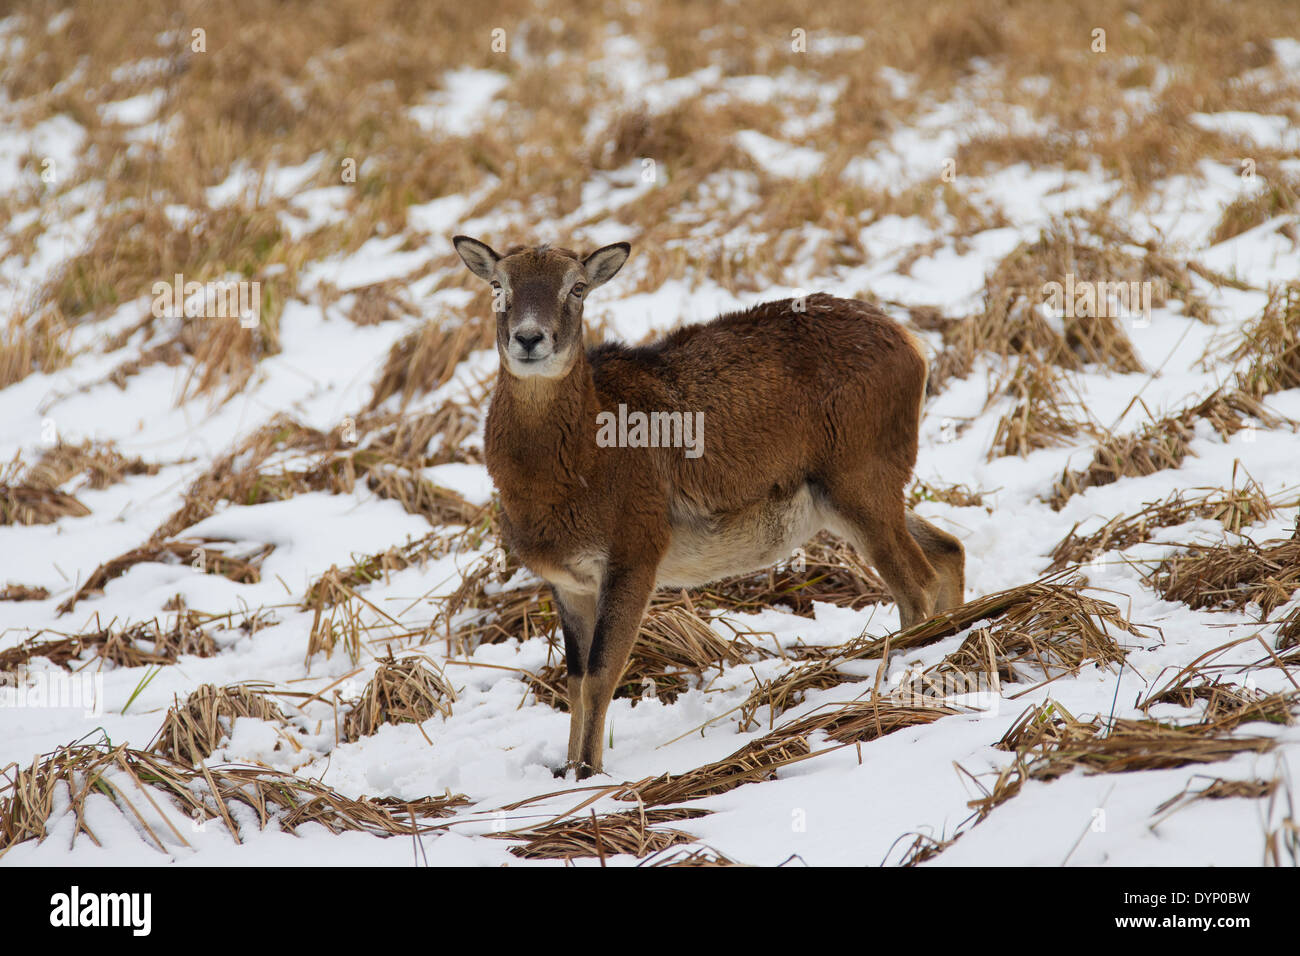 Mouflon (Ovis gmelini européenne / Ovis ammon musimon / Ovis orientalis musimon) brebis dans la neige en hiver Banque D'Images